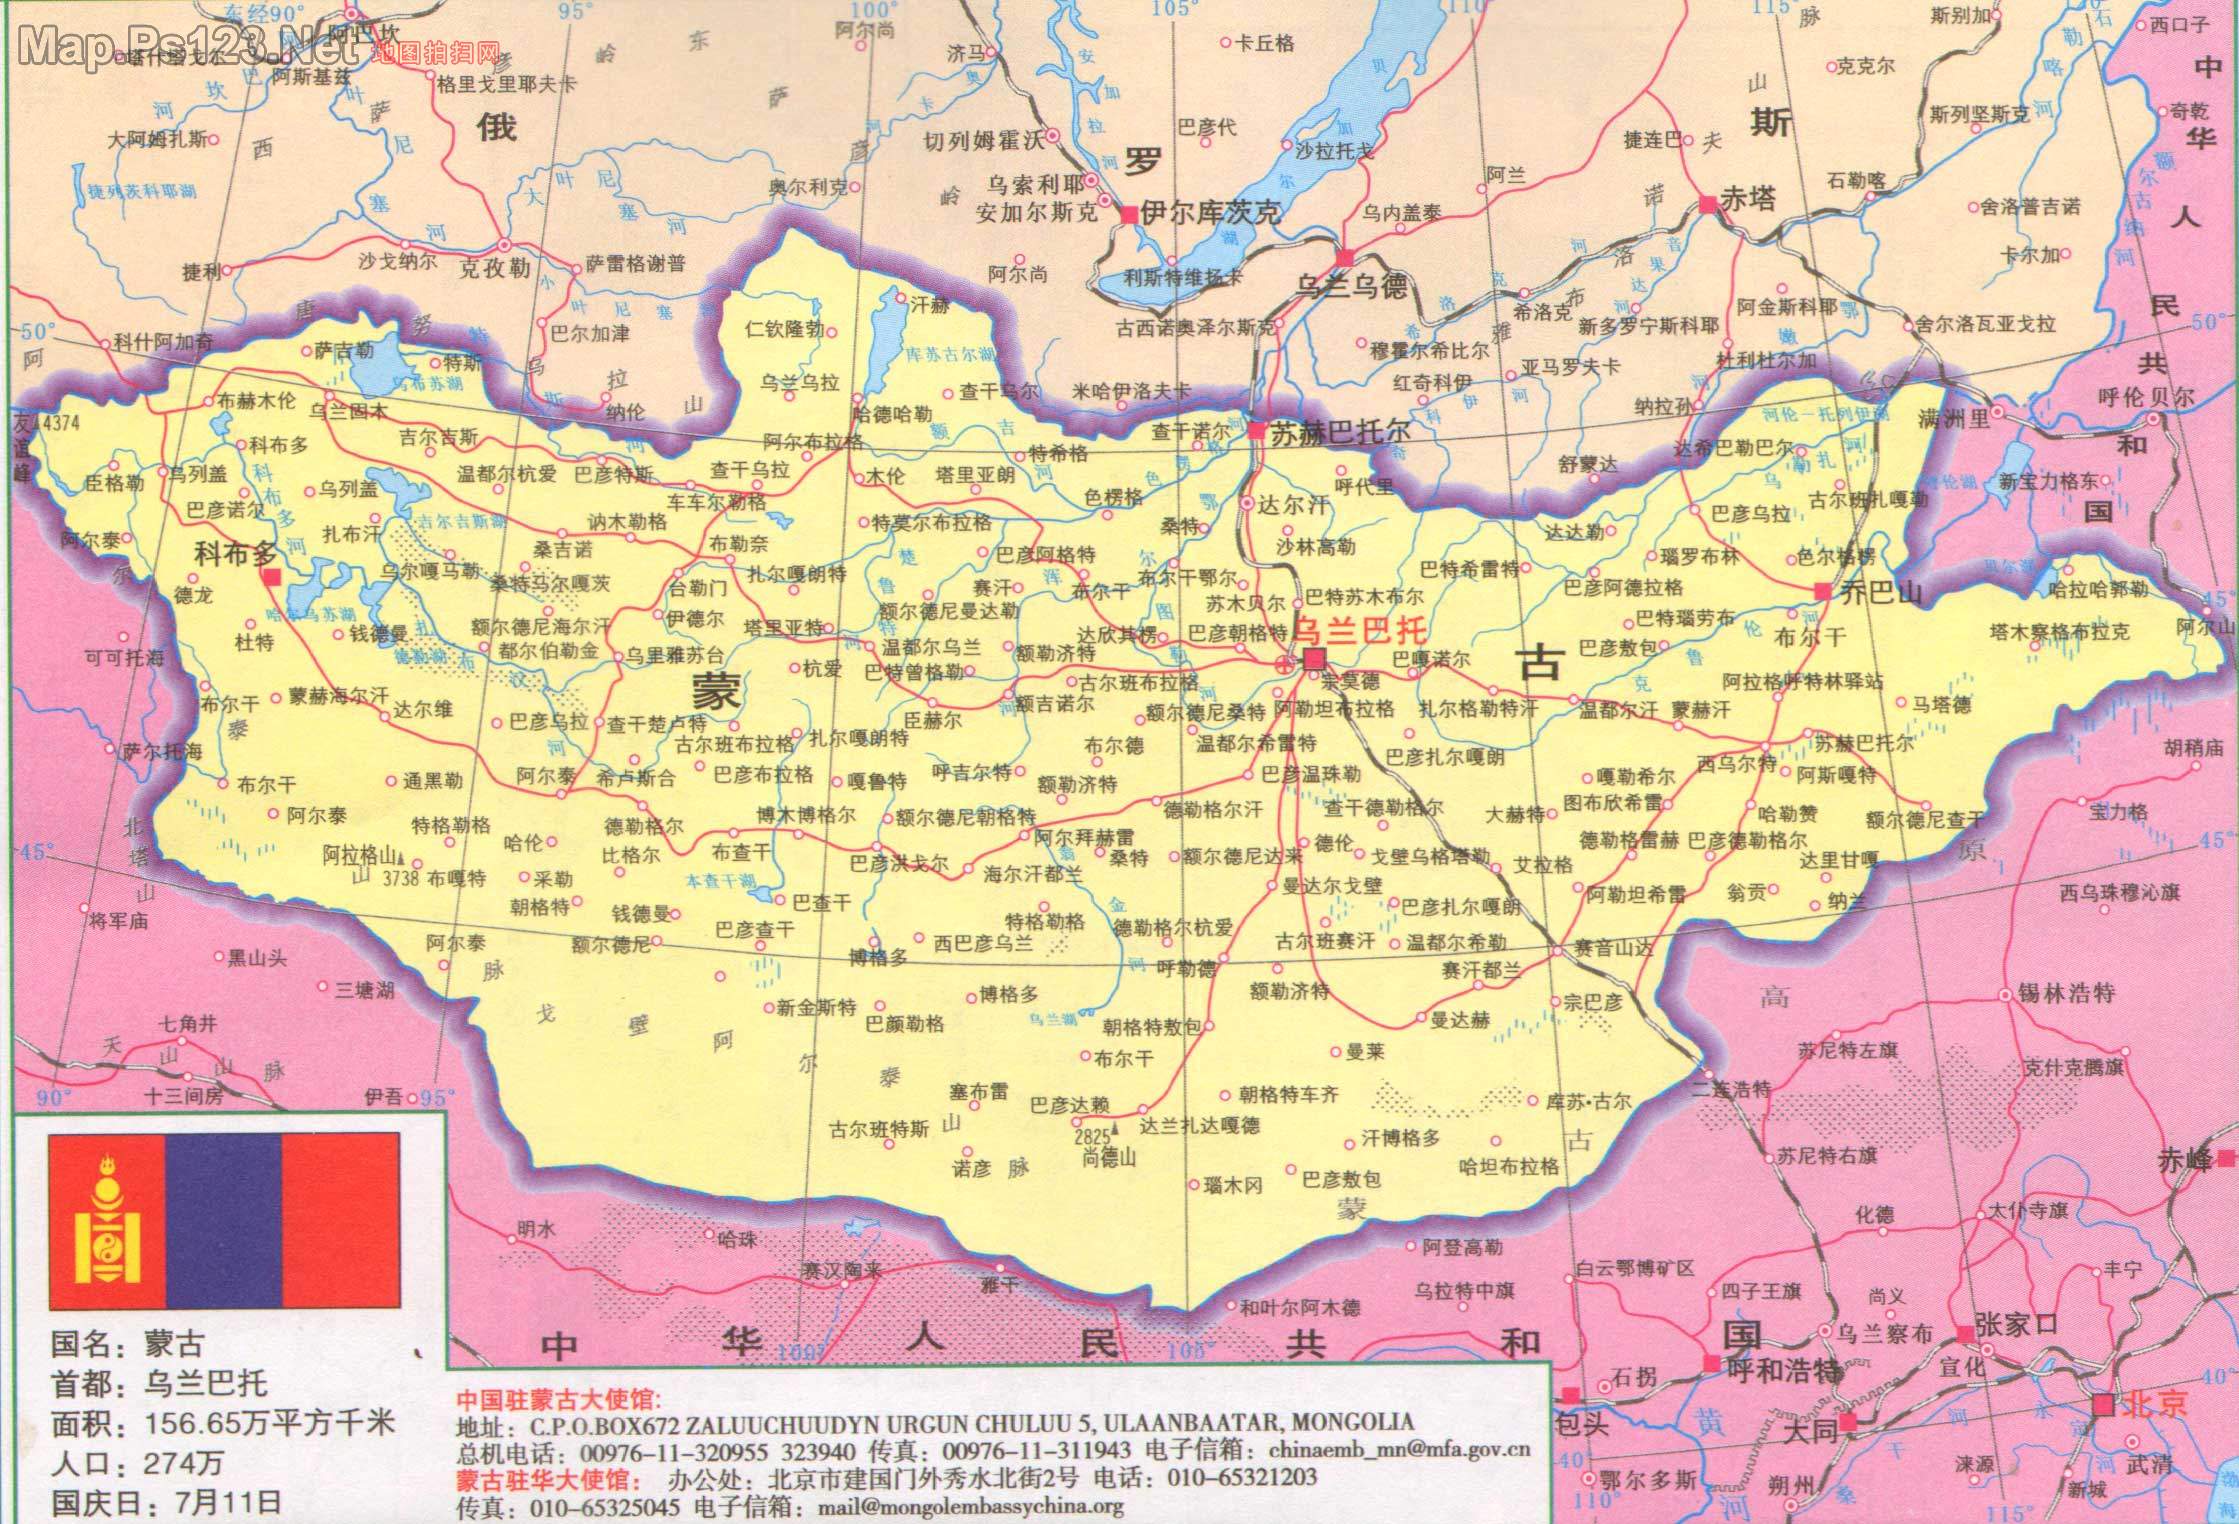 上一幅地图: 蒙古地图中文版全图 | 蒙古 | 下一幅地图: 蒙古分县